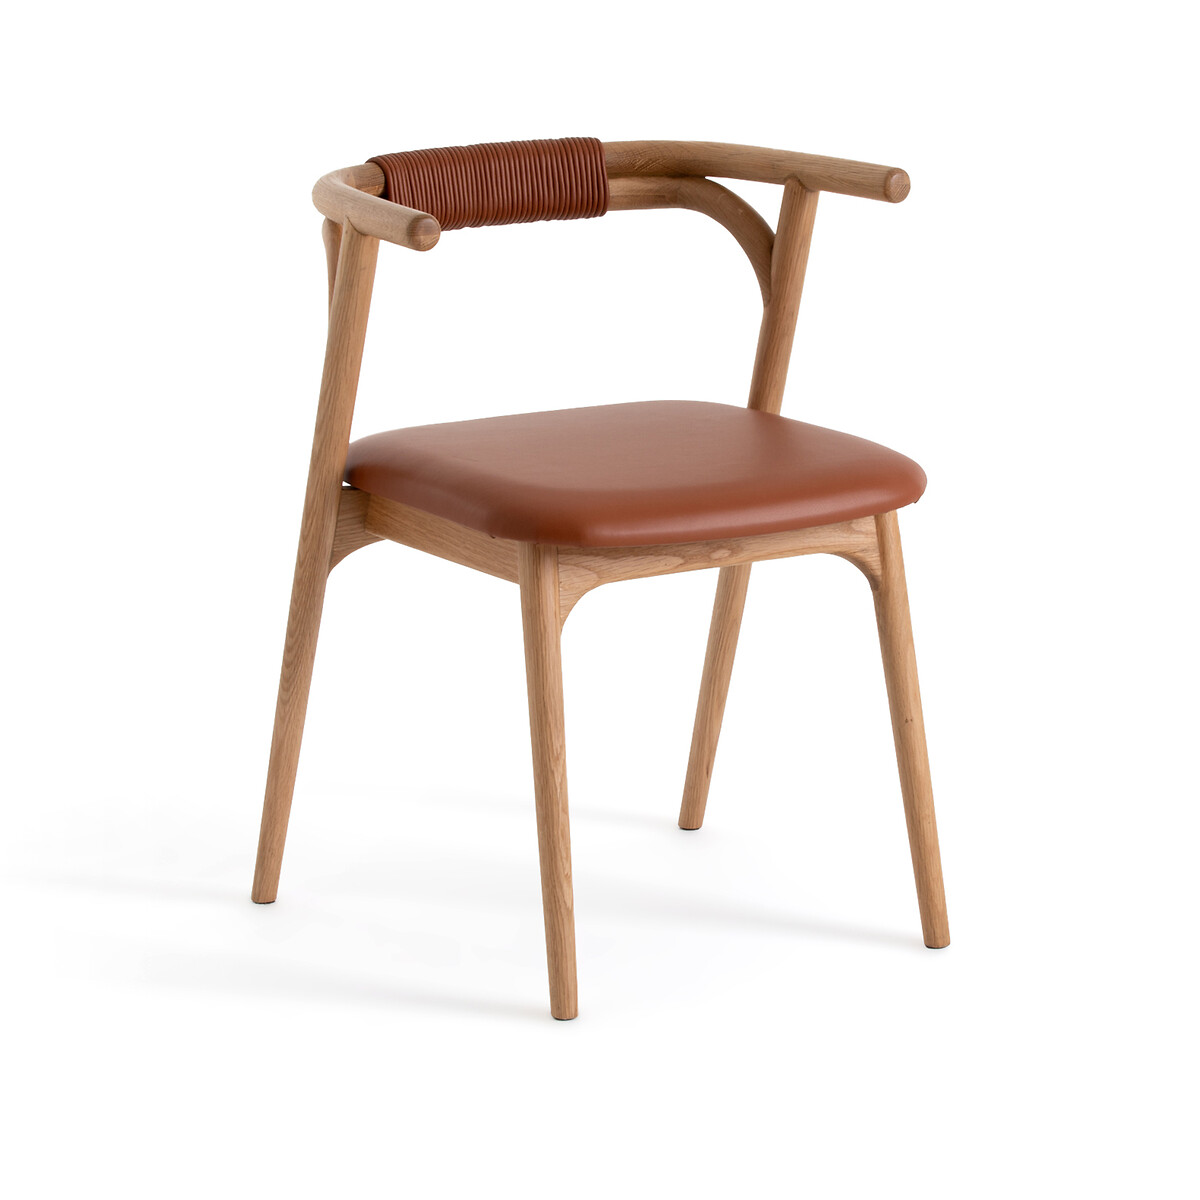 Кресло Для столовой из дубакожи Fermyo единый размер каштановый